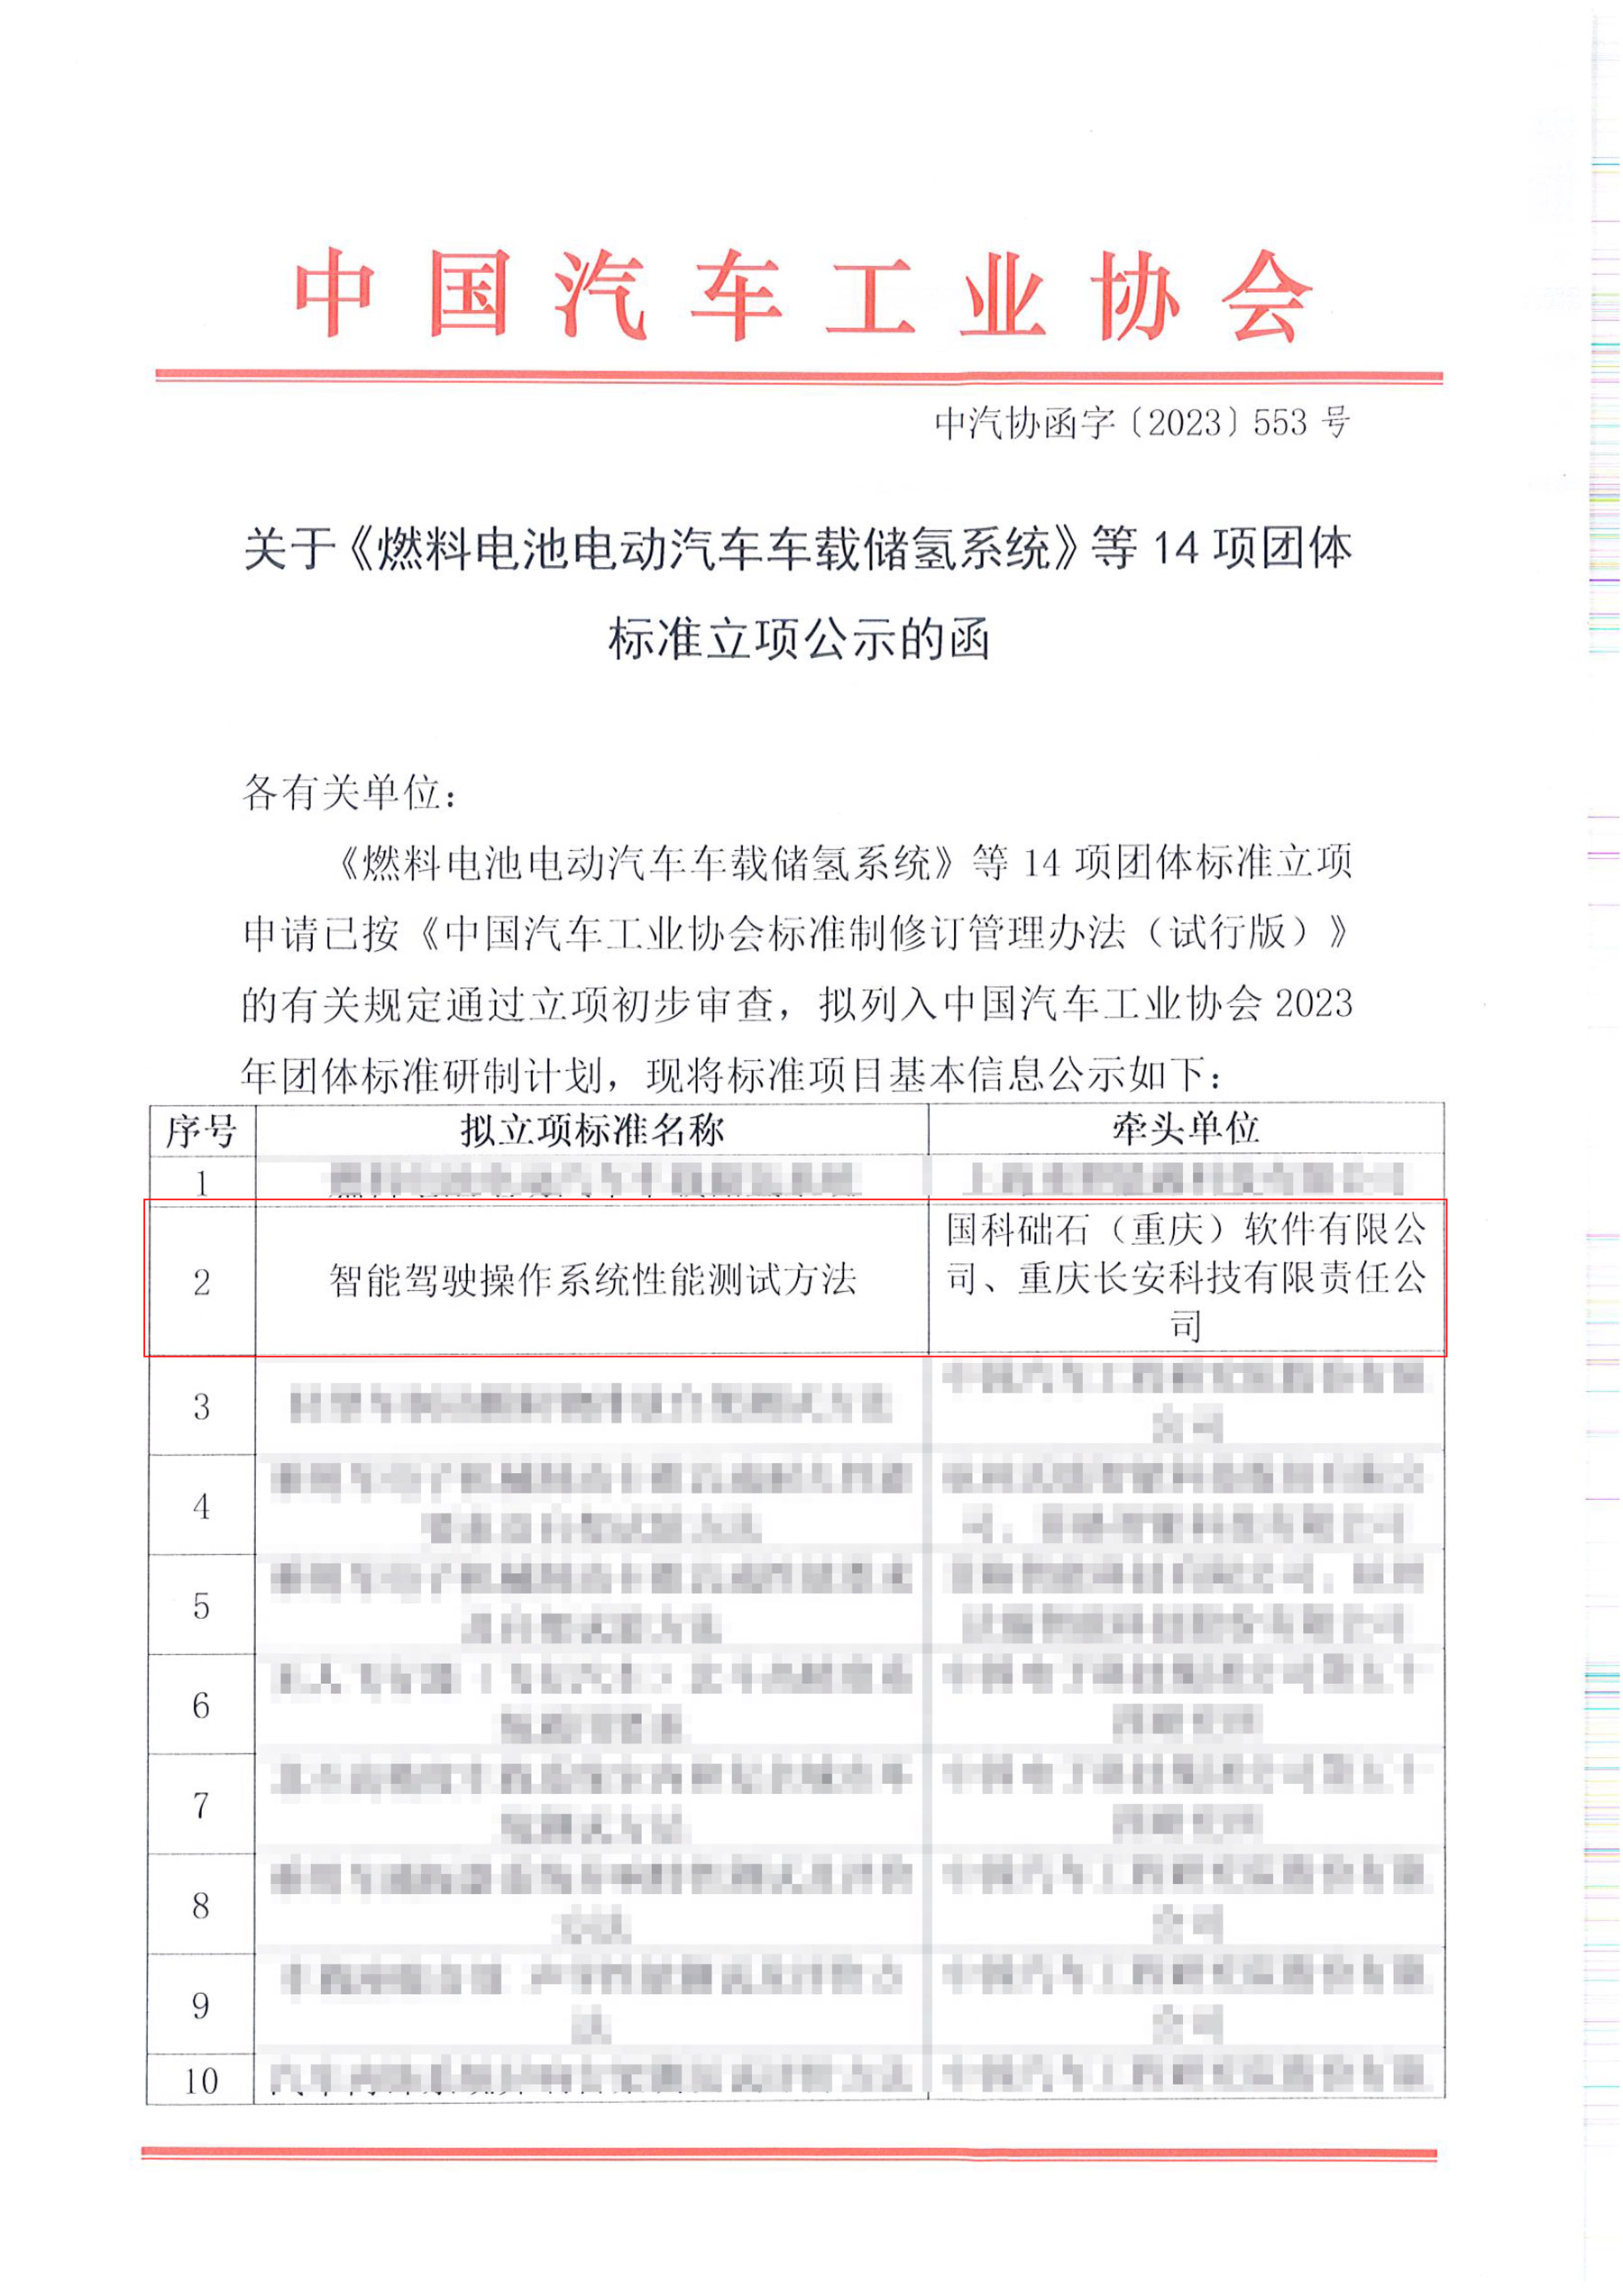 中国汽车工业协会 发布关于《智能驾驶操作系统性能测试方法》团体标准立项公示的函